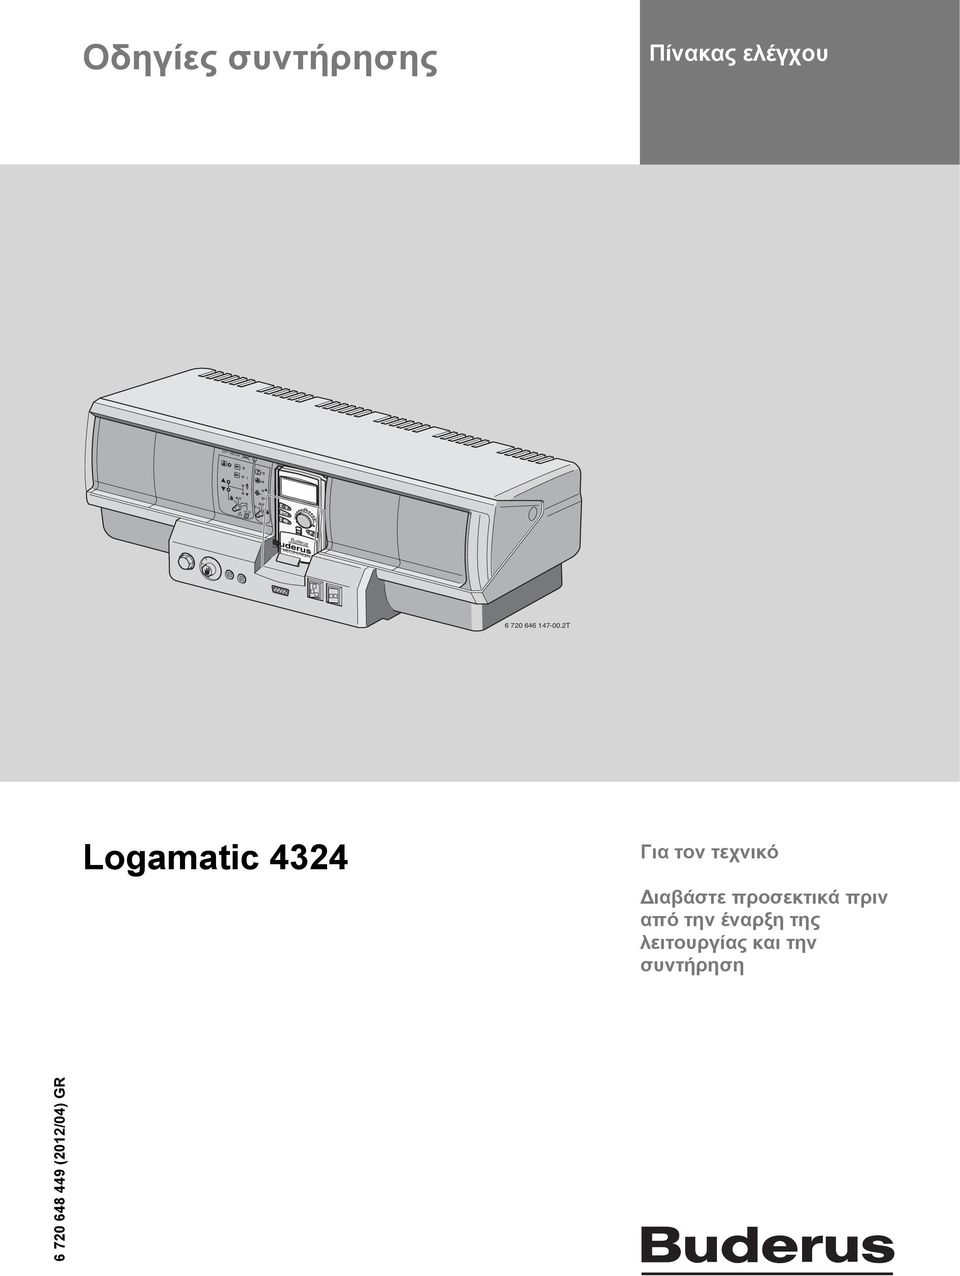 2T Logamatic 4324 Για τον τεχνικό Διαβάστε προσεκτικά